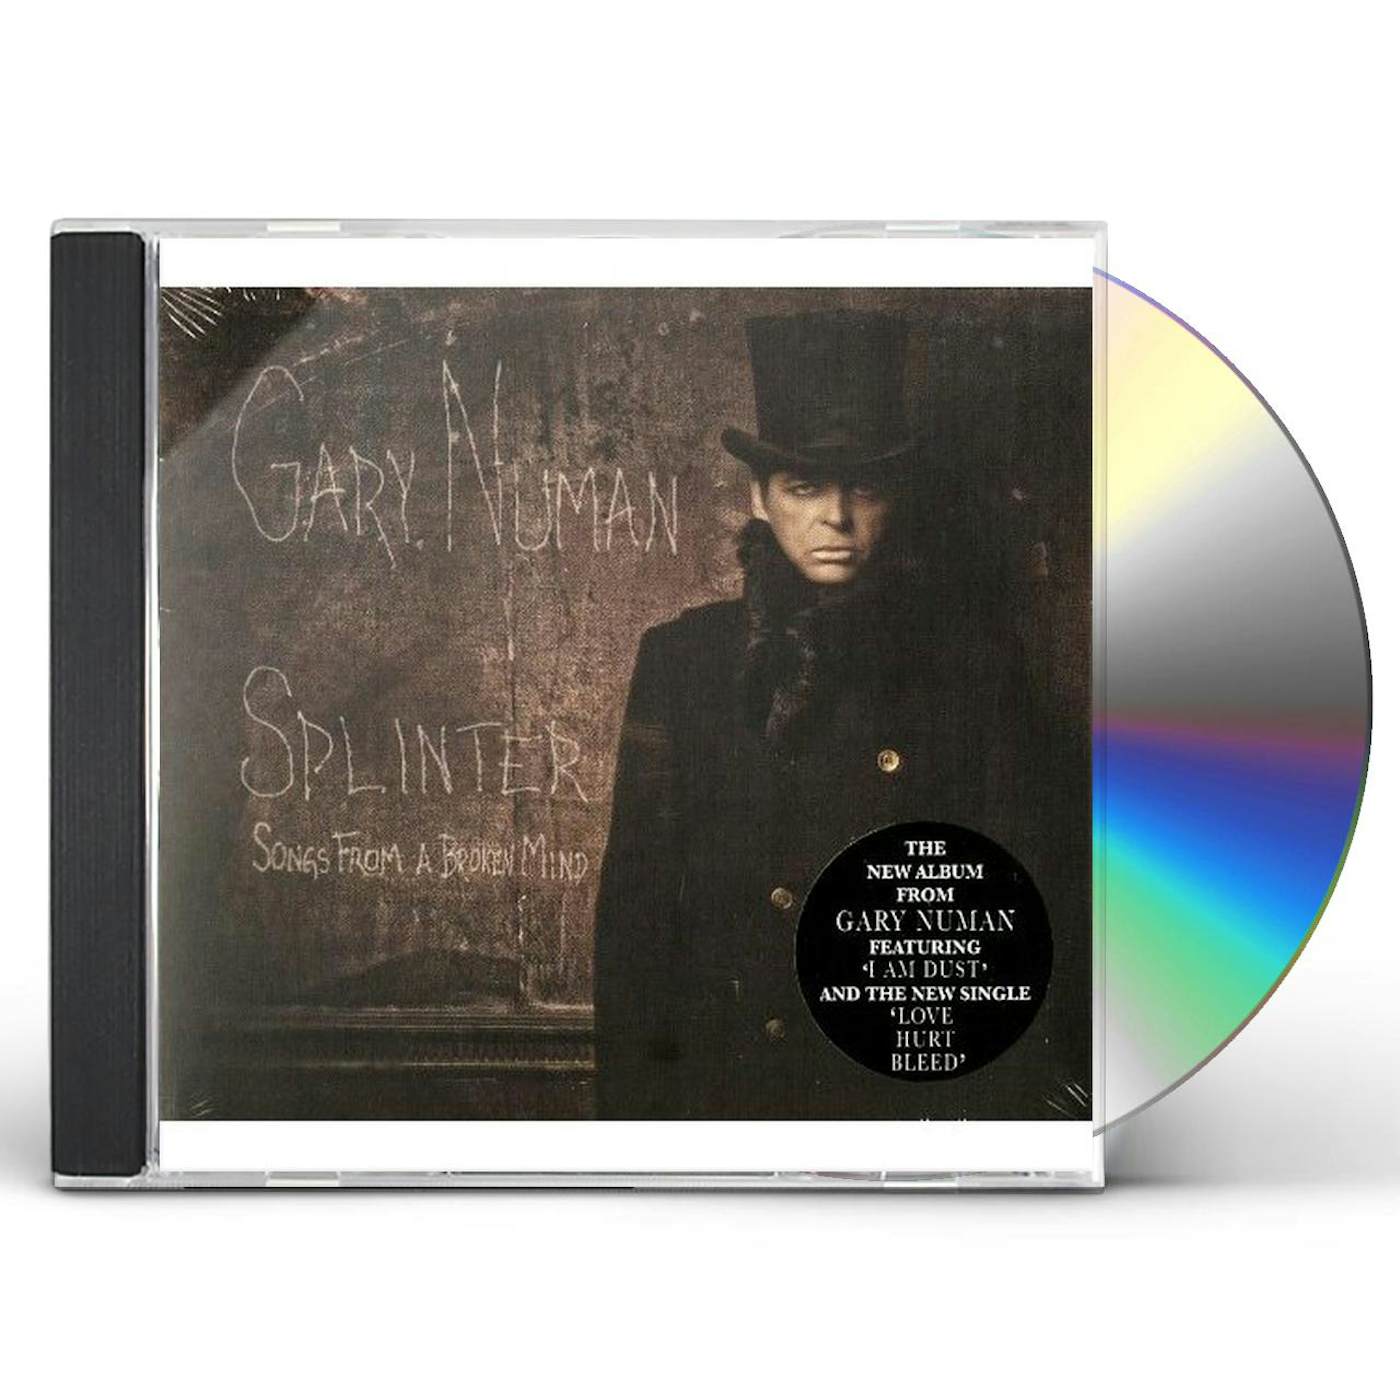 Gary Numan SPLINTER (SONGS FROM A BROKEN MIND) CD